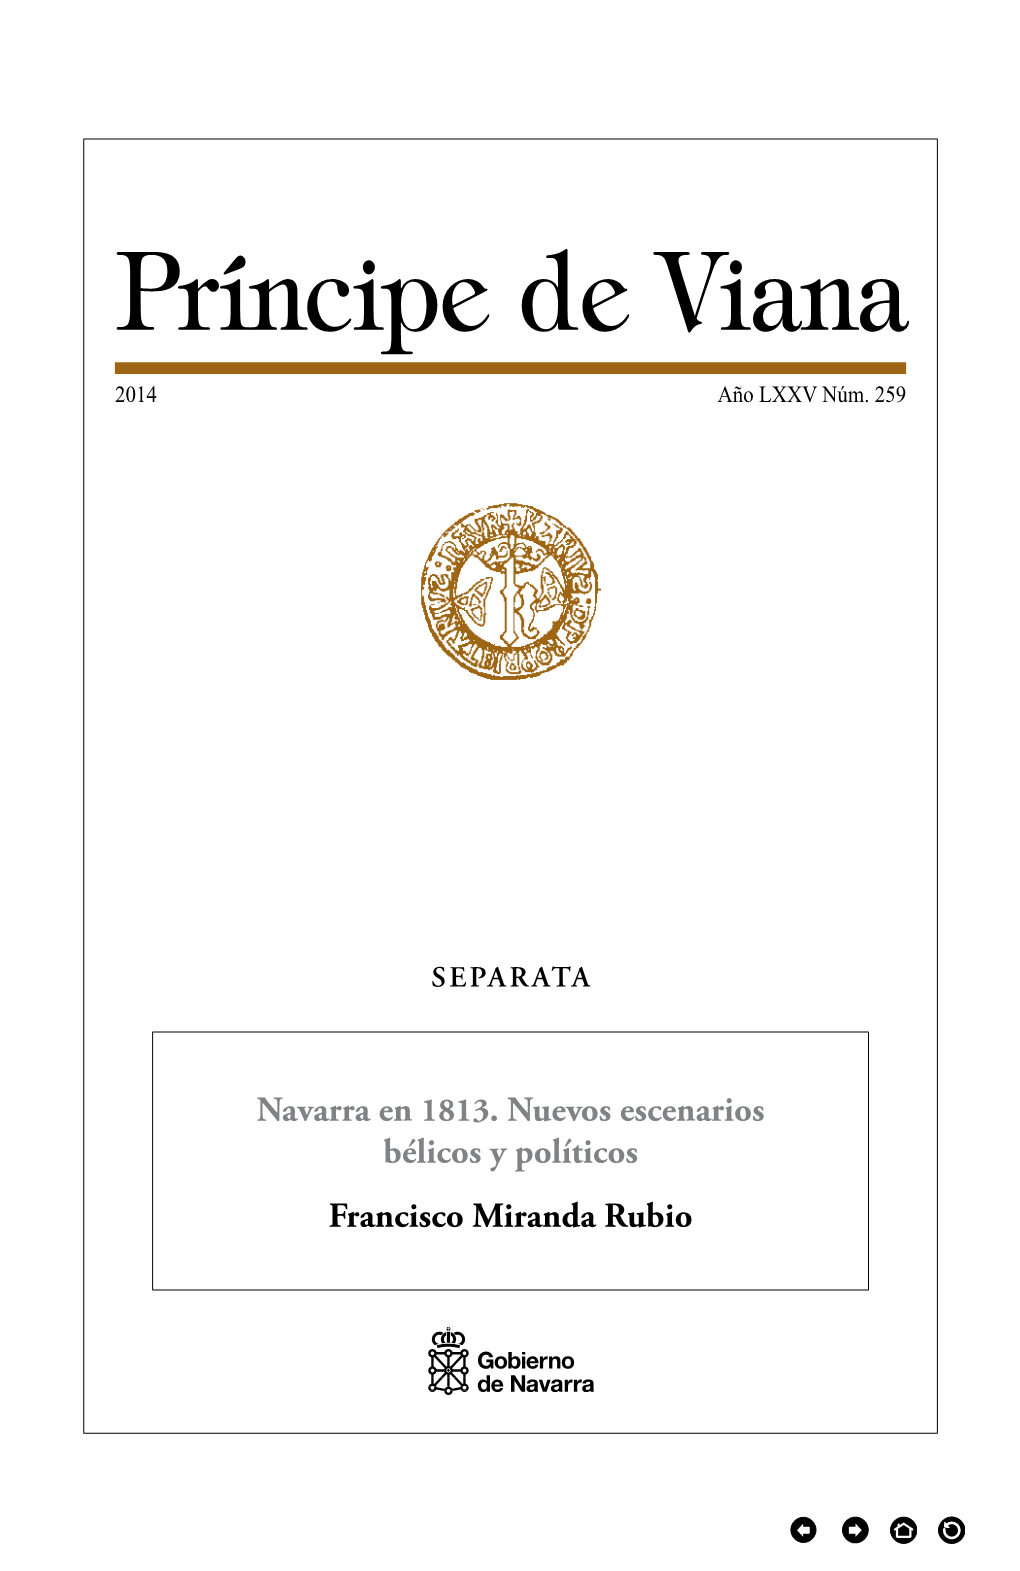 Navarra En 1813. Nuevos Escenarios Bélicos Y Políticos Francisco Miranda Rubio PRÍNCIPE DE VIANA